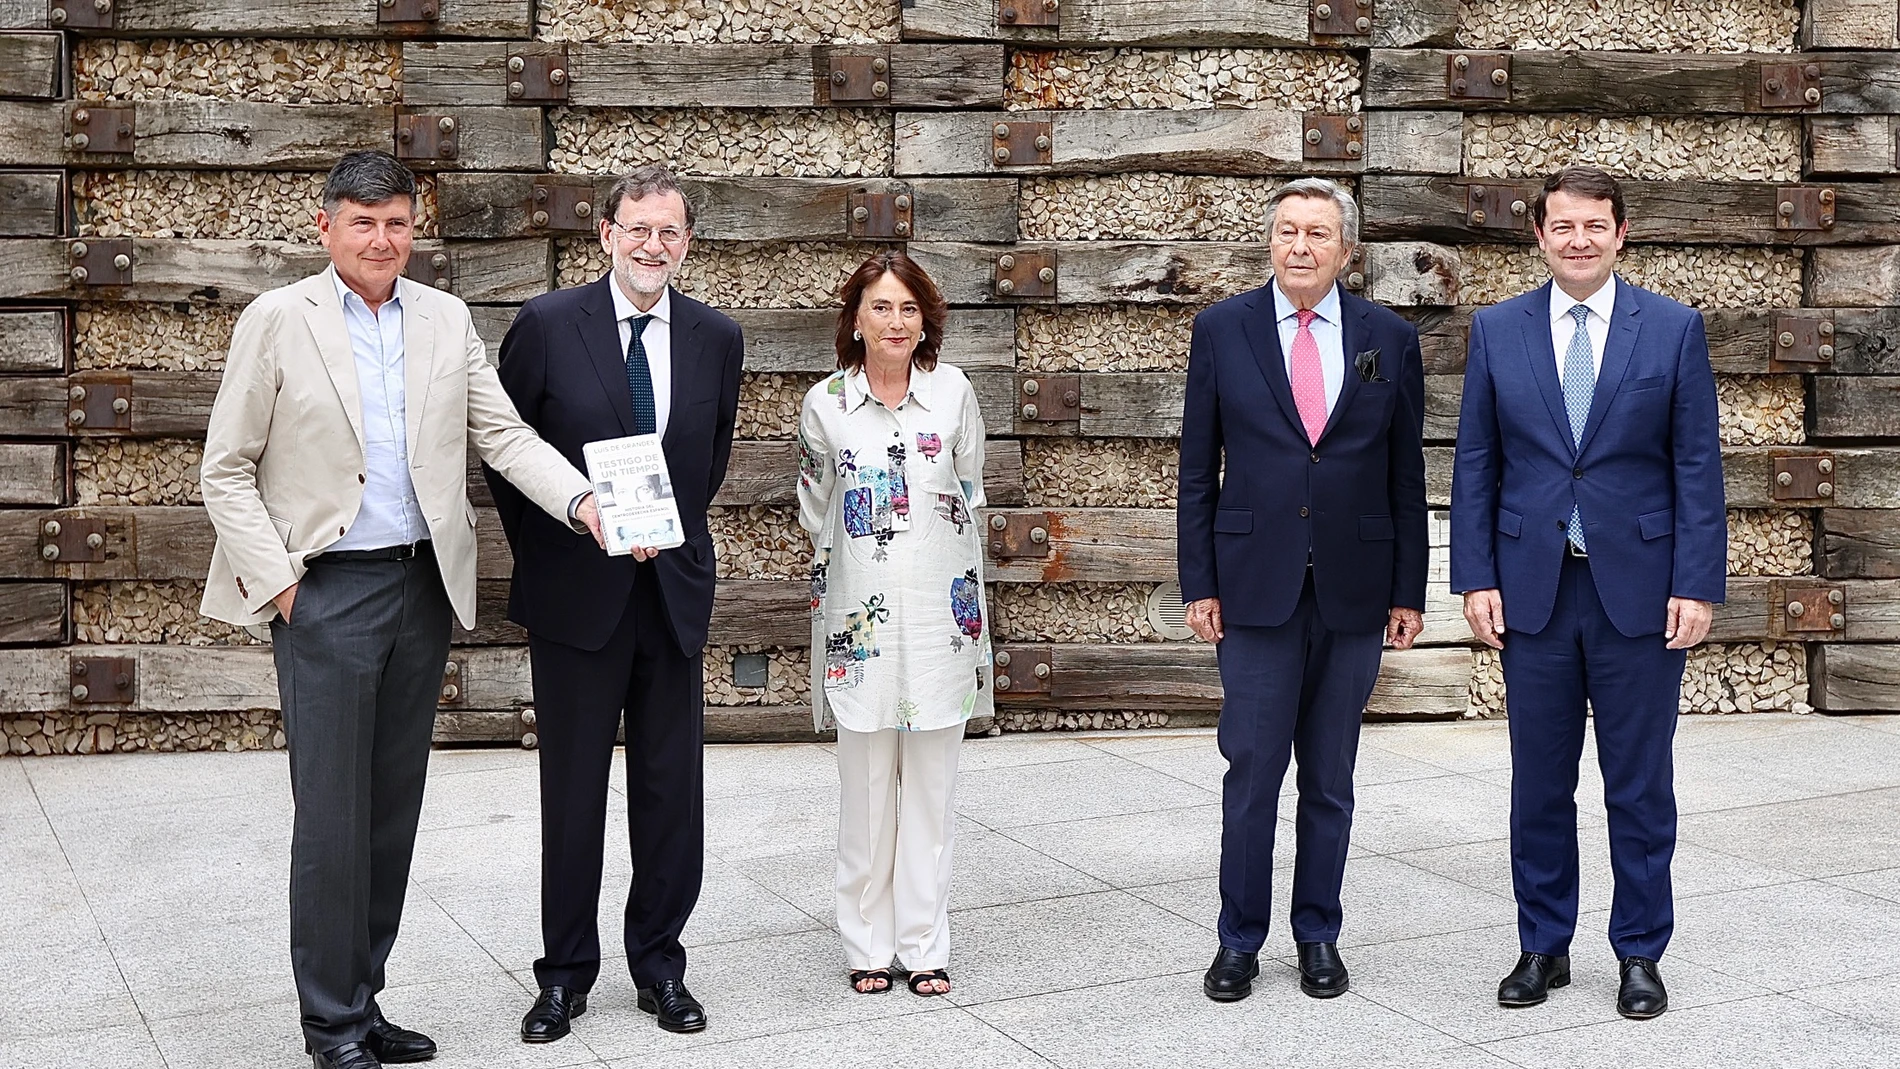 El presidente de la junta, Alfonso Fernández Mañueco, asiste a la presentación del libro de Luis de Grandes, "Testigos de un Tiempo", donde también intervino Mariano Rajoy